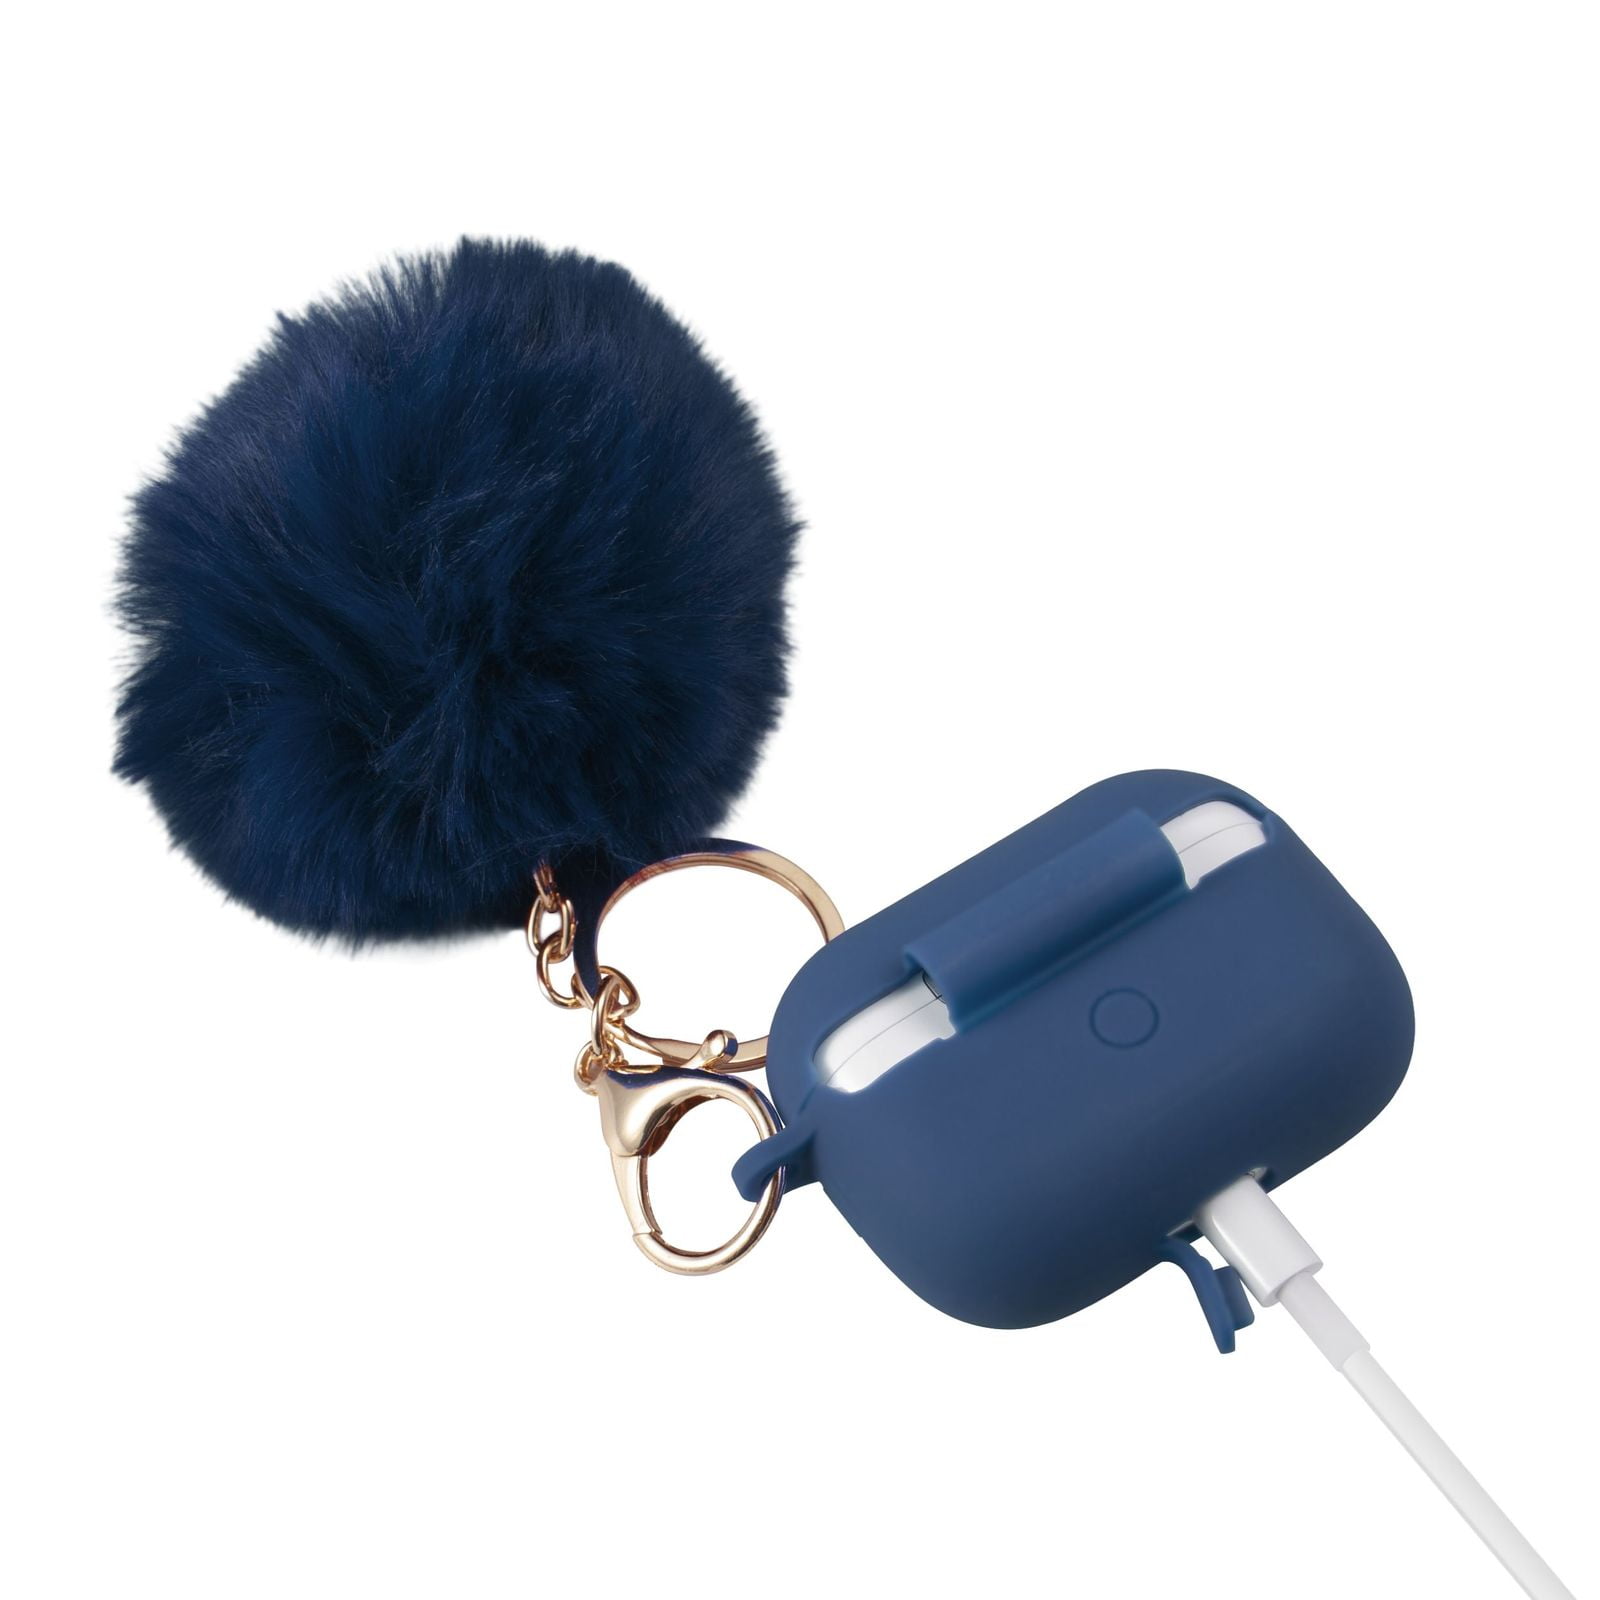 オーディオ機器 イヤフォン Insten Fluffy Pom Pom Case For Airpods Pro, Silicone Carry Case with  Keychain & Anti-Lost Strap, Soft Touch Protective Skin Cover, Blue